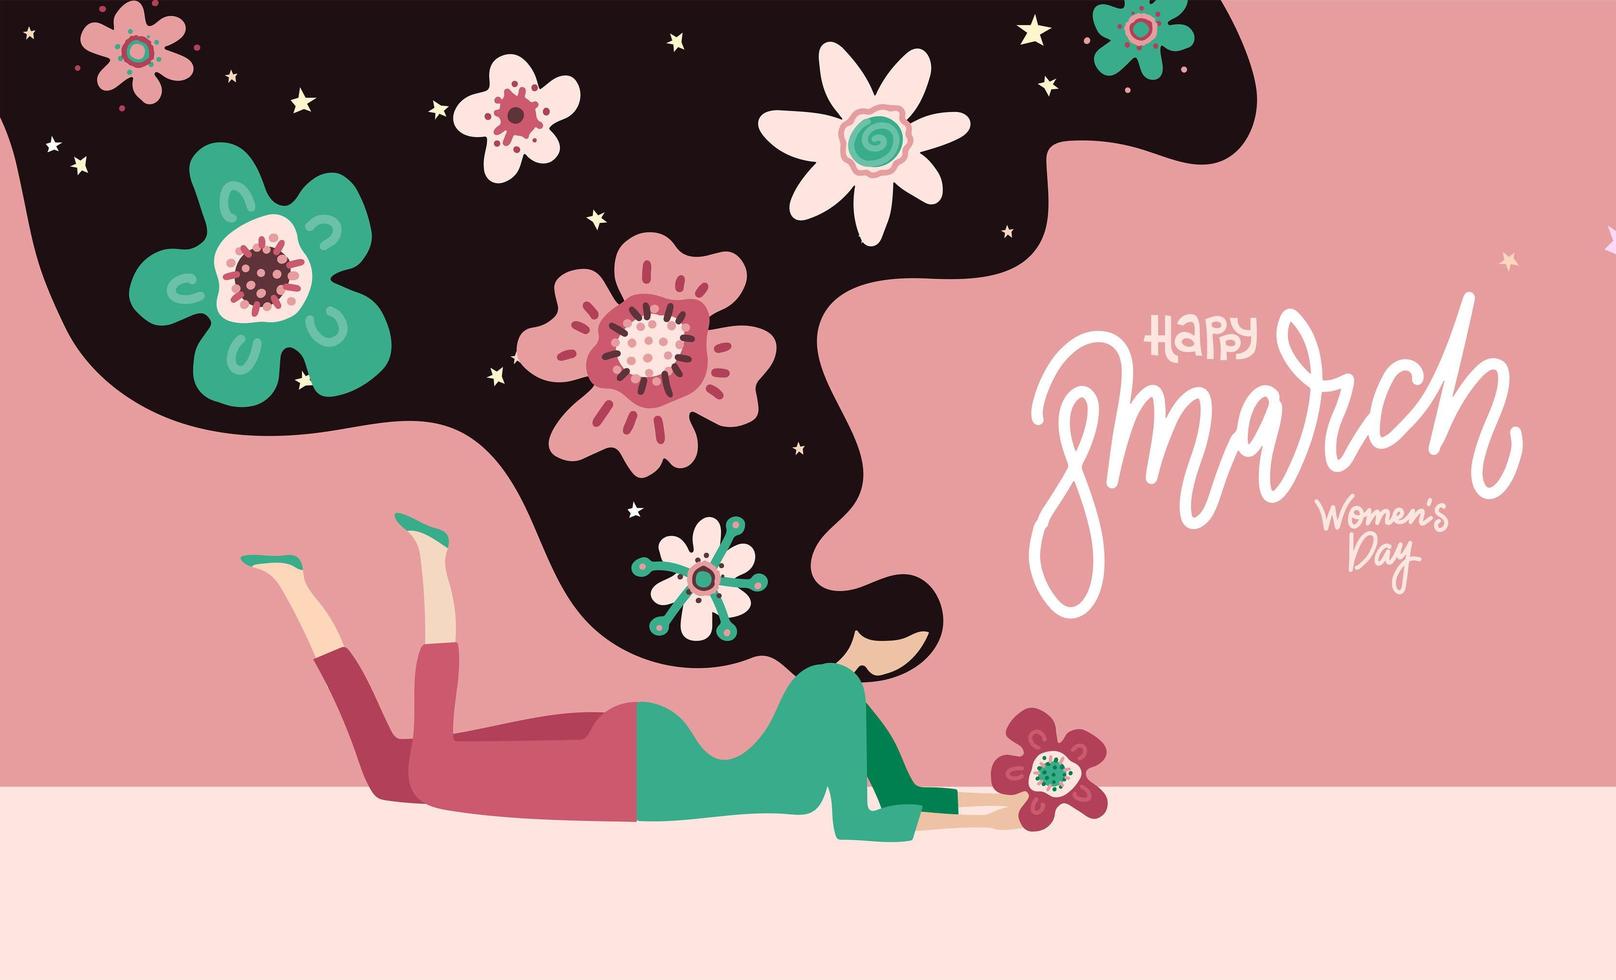 buona festa della donna - 8 marzo. giovane donna sdraiata con i capelli lunghi con fiori. illustrazione vettoriale disegnata a mano piatta con caratteri di linea